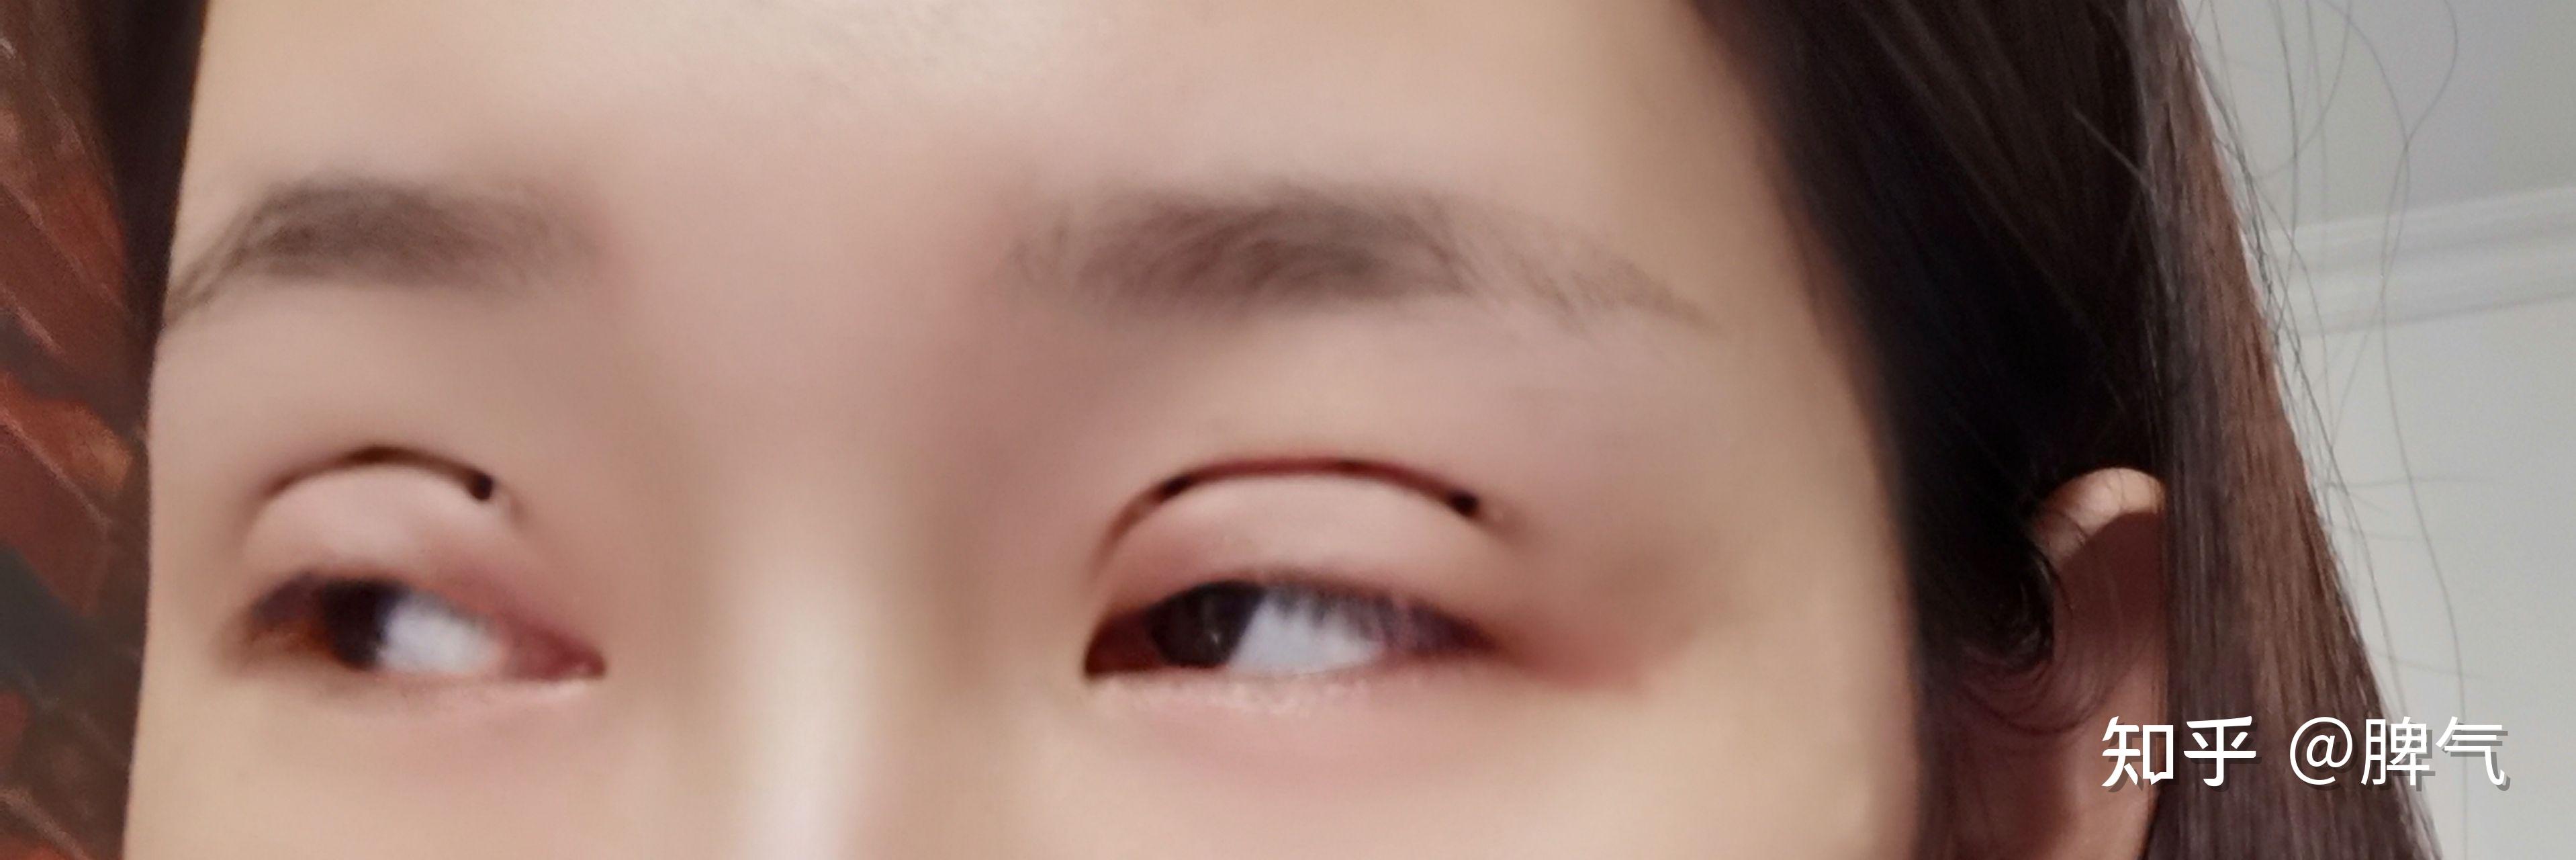 三点式双眼皮（北京医院丁金萍）系列案例六十五 - 知乎